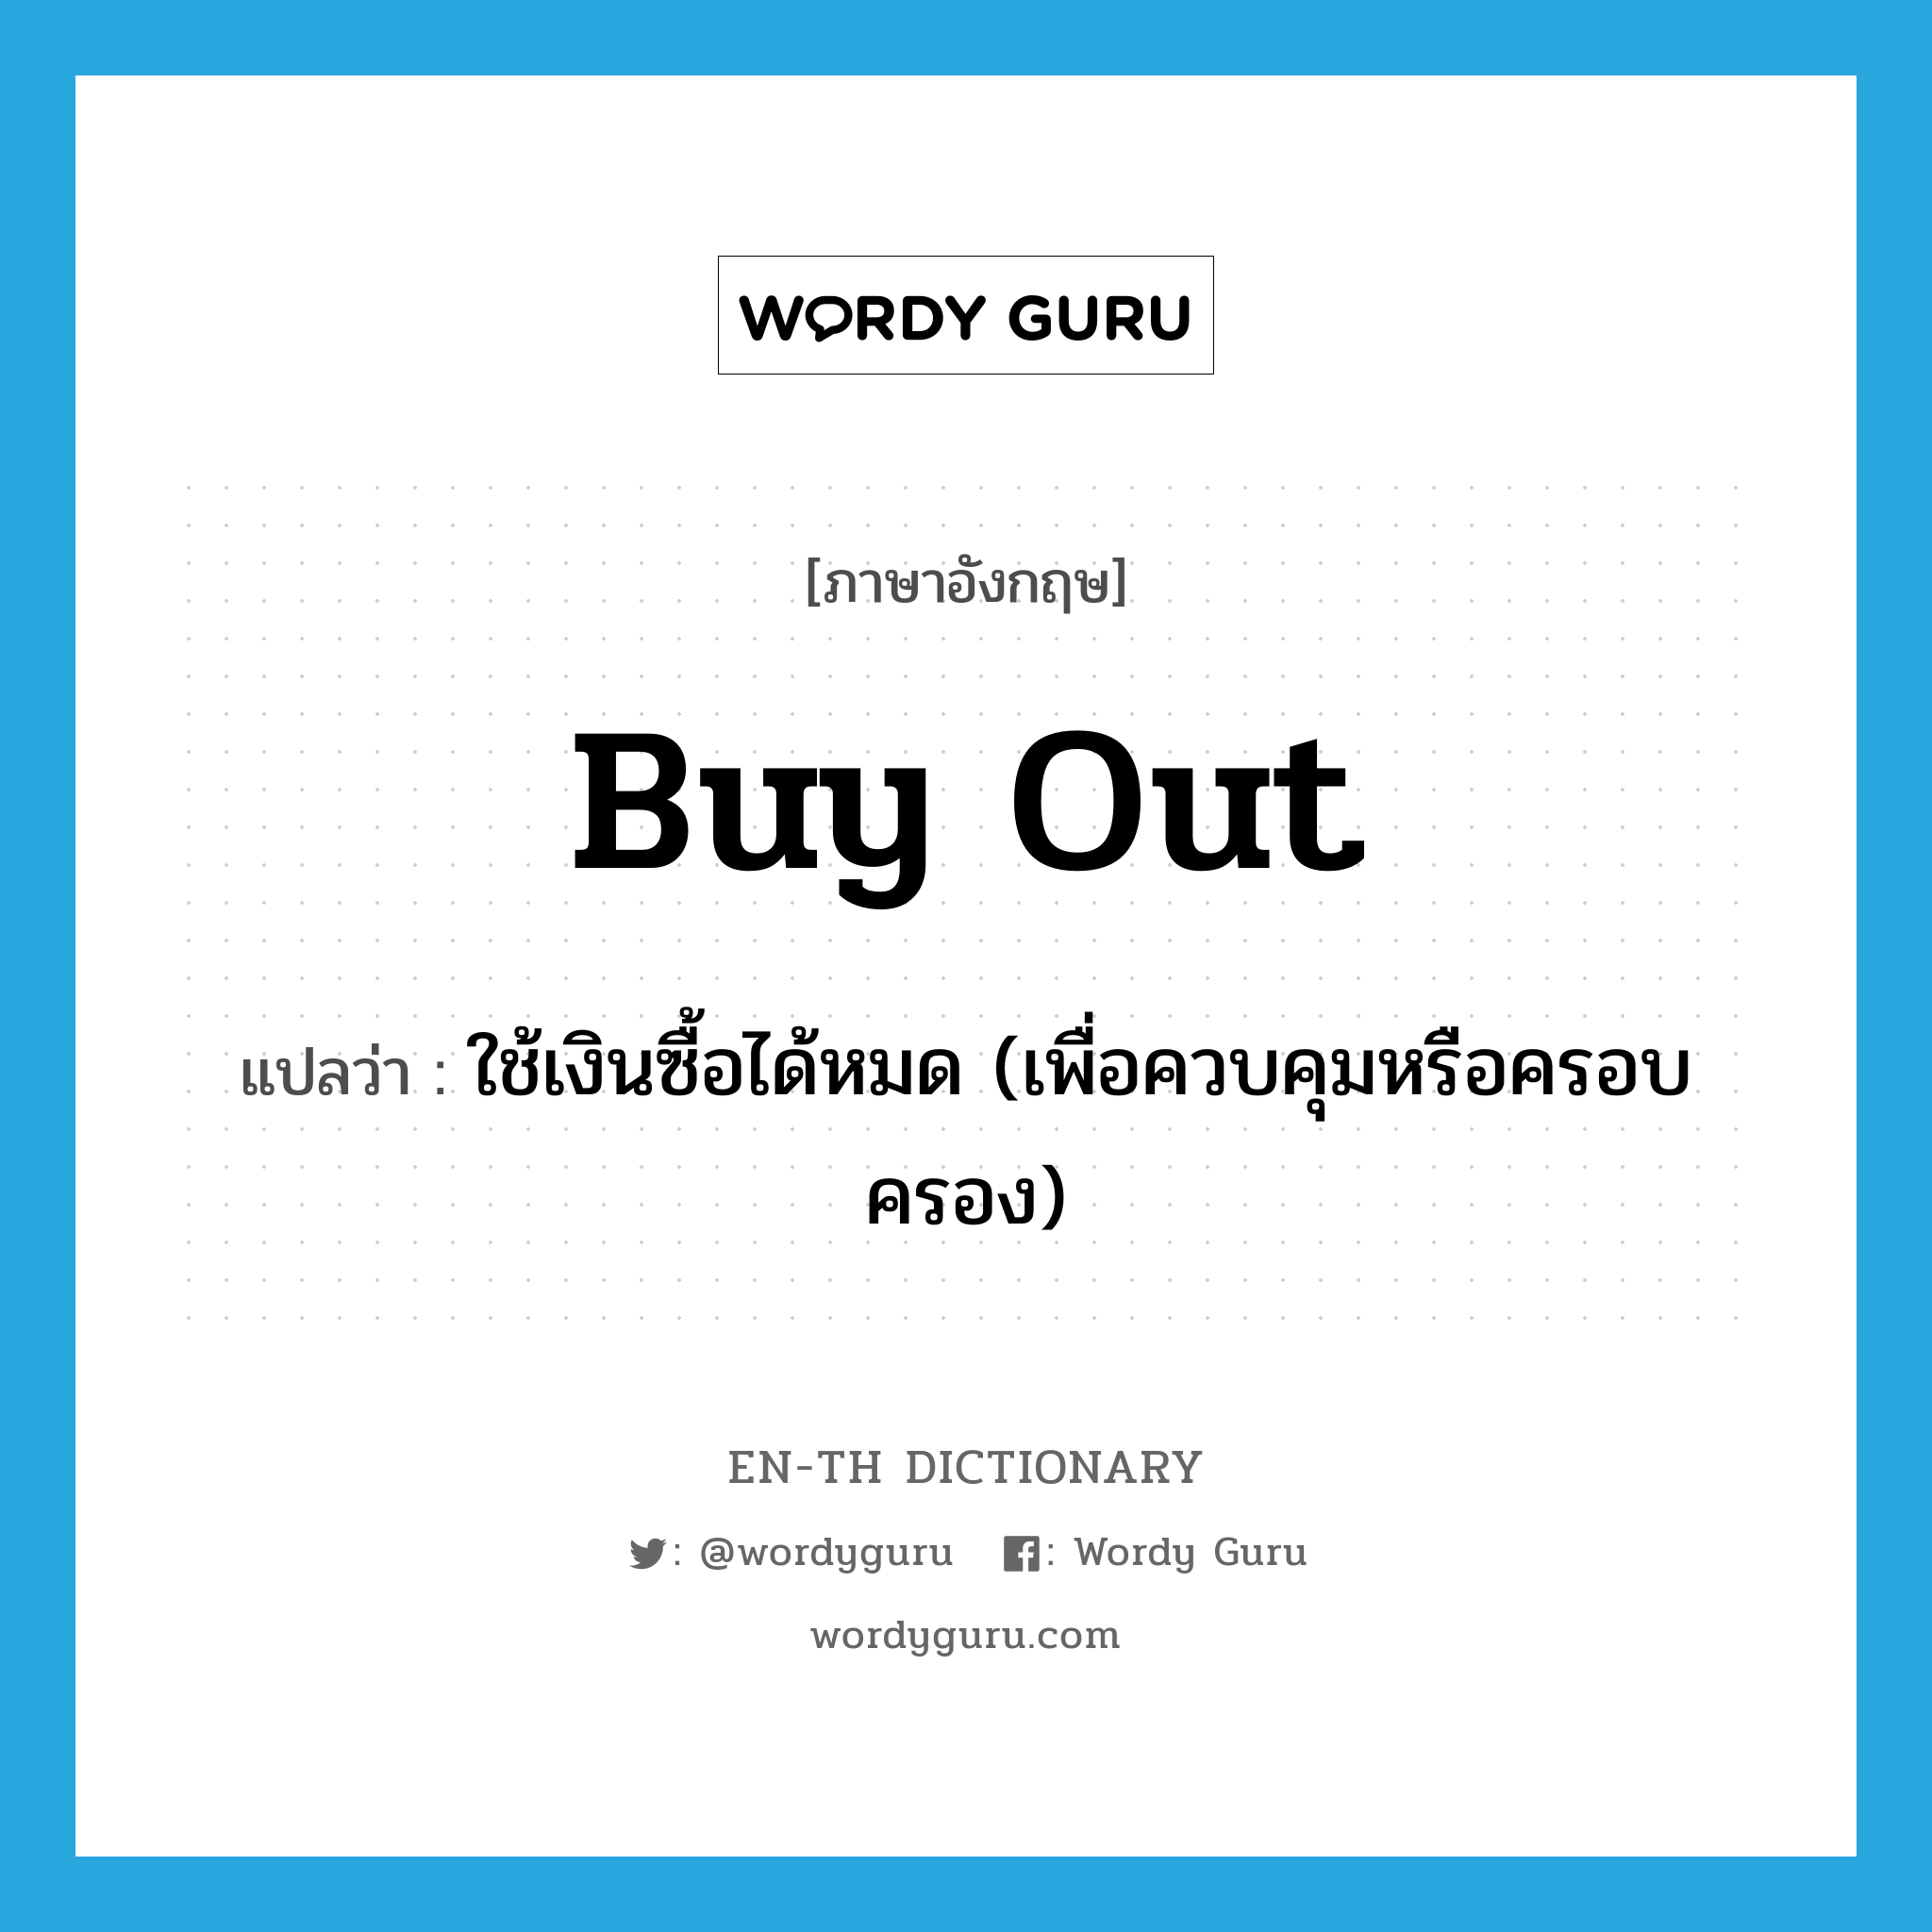 buy out แปลว่า?, คำศัพท์ภาษาอังกฤษ buy out แปลว่า ใช้เงินซื้อได้หมด (เพื่อควบคุมหรือครอบครอง) ประเภท PHRV หมวด PHRV